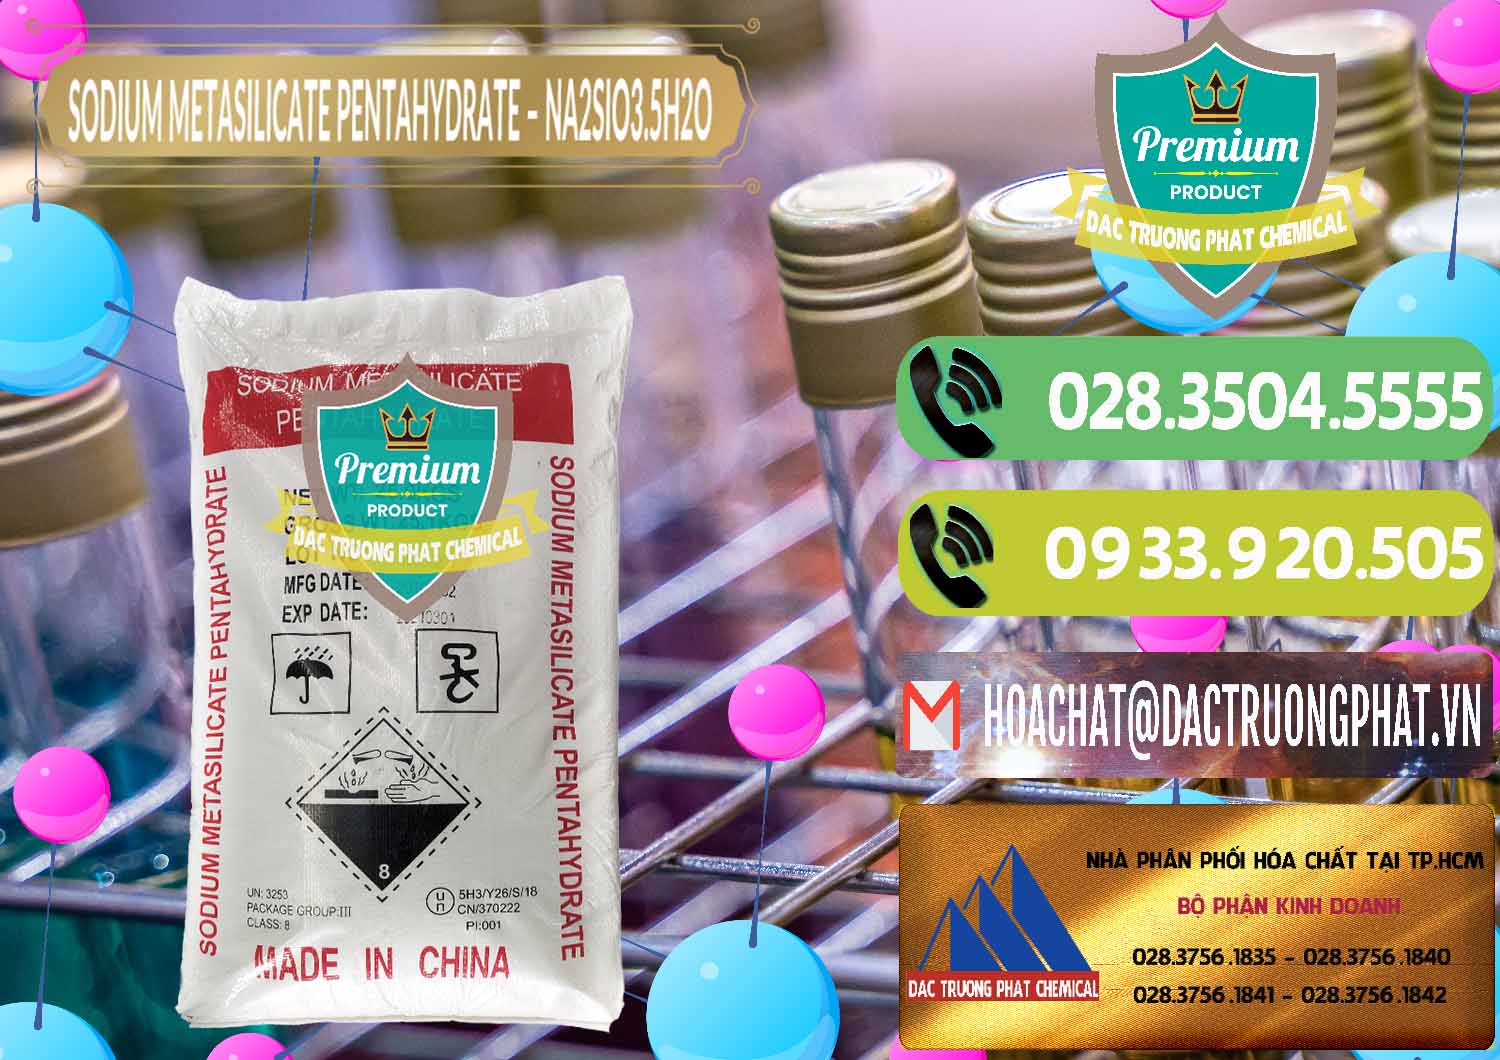 Chuyên cung cấp _ bán Sodium Metasilicate Pentahydrate – Silicate Bột Trung Quốc China - 0147 - Đơn vị chuyên bán và cung cấp hóa chất tại TP.HCM - hoachatmientay.vn